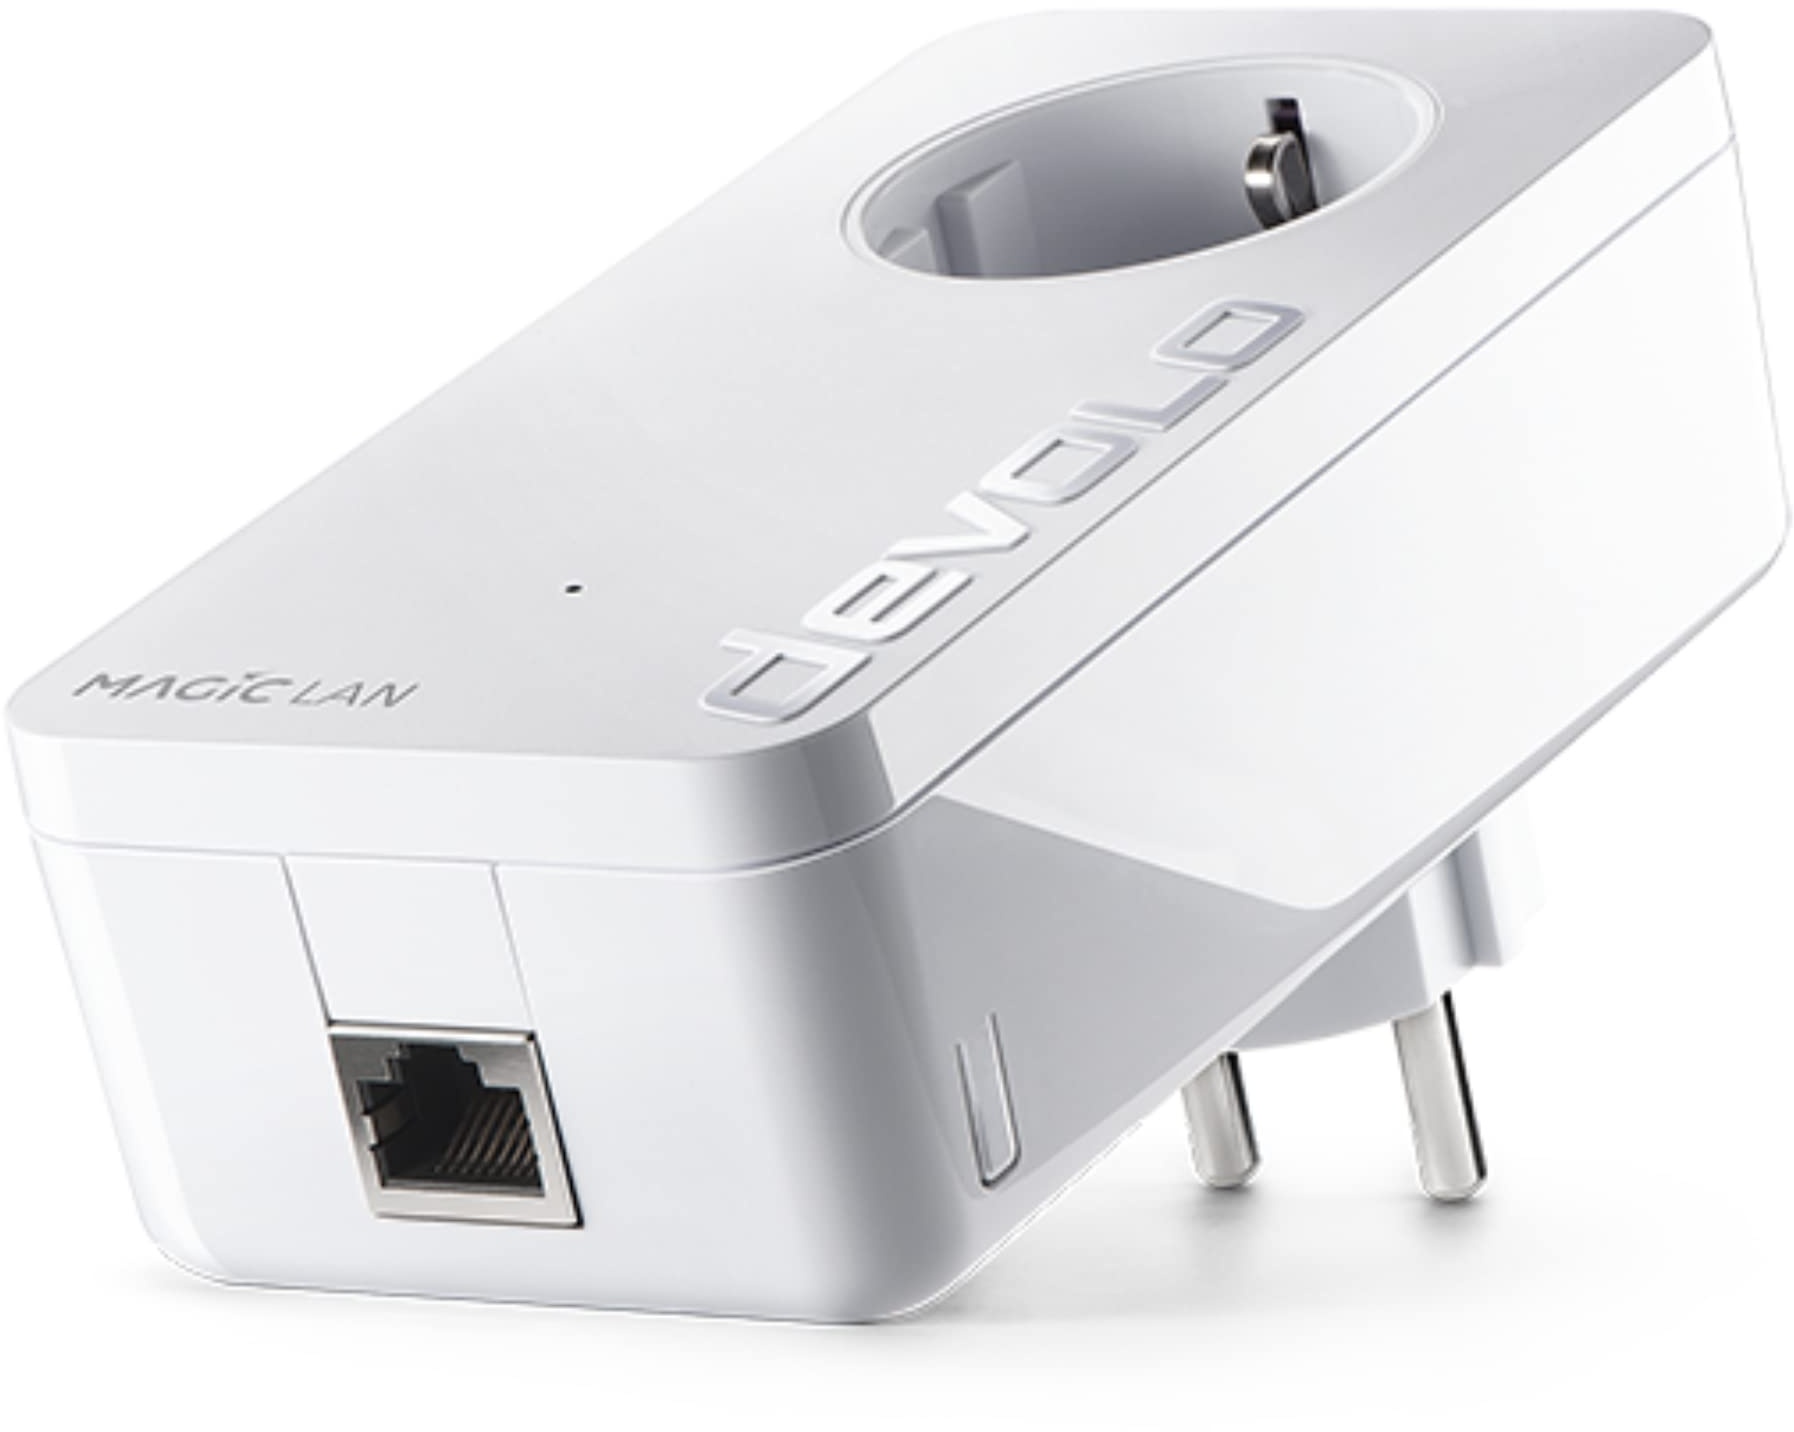 devolo Magic 2 LAN Erweiterungsadapter, LAN Powerline Adapter -bis 2.400 Mbit/s, ideal für Gaming & Home Office, 2x Gigabit LAN Anschluss, dLAN 2.0, weiß